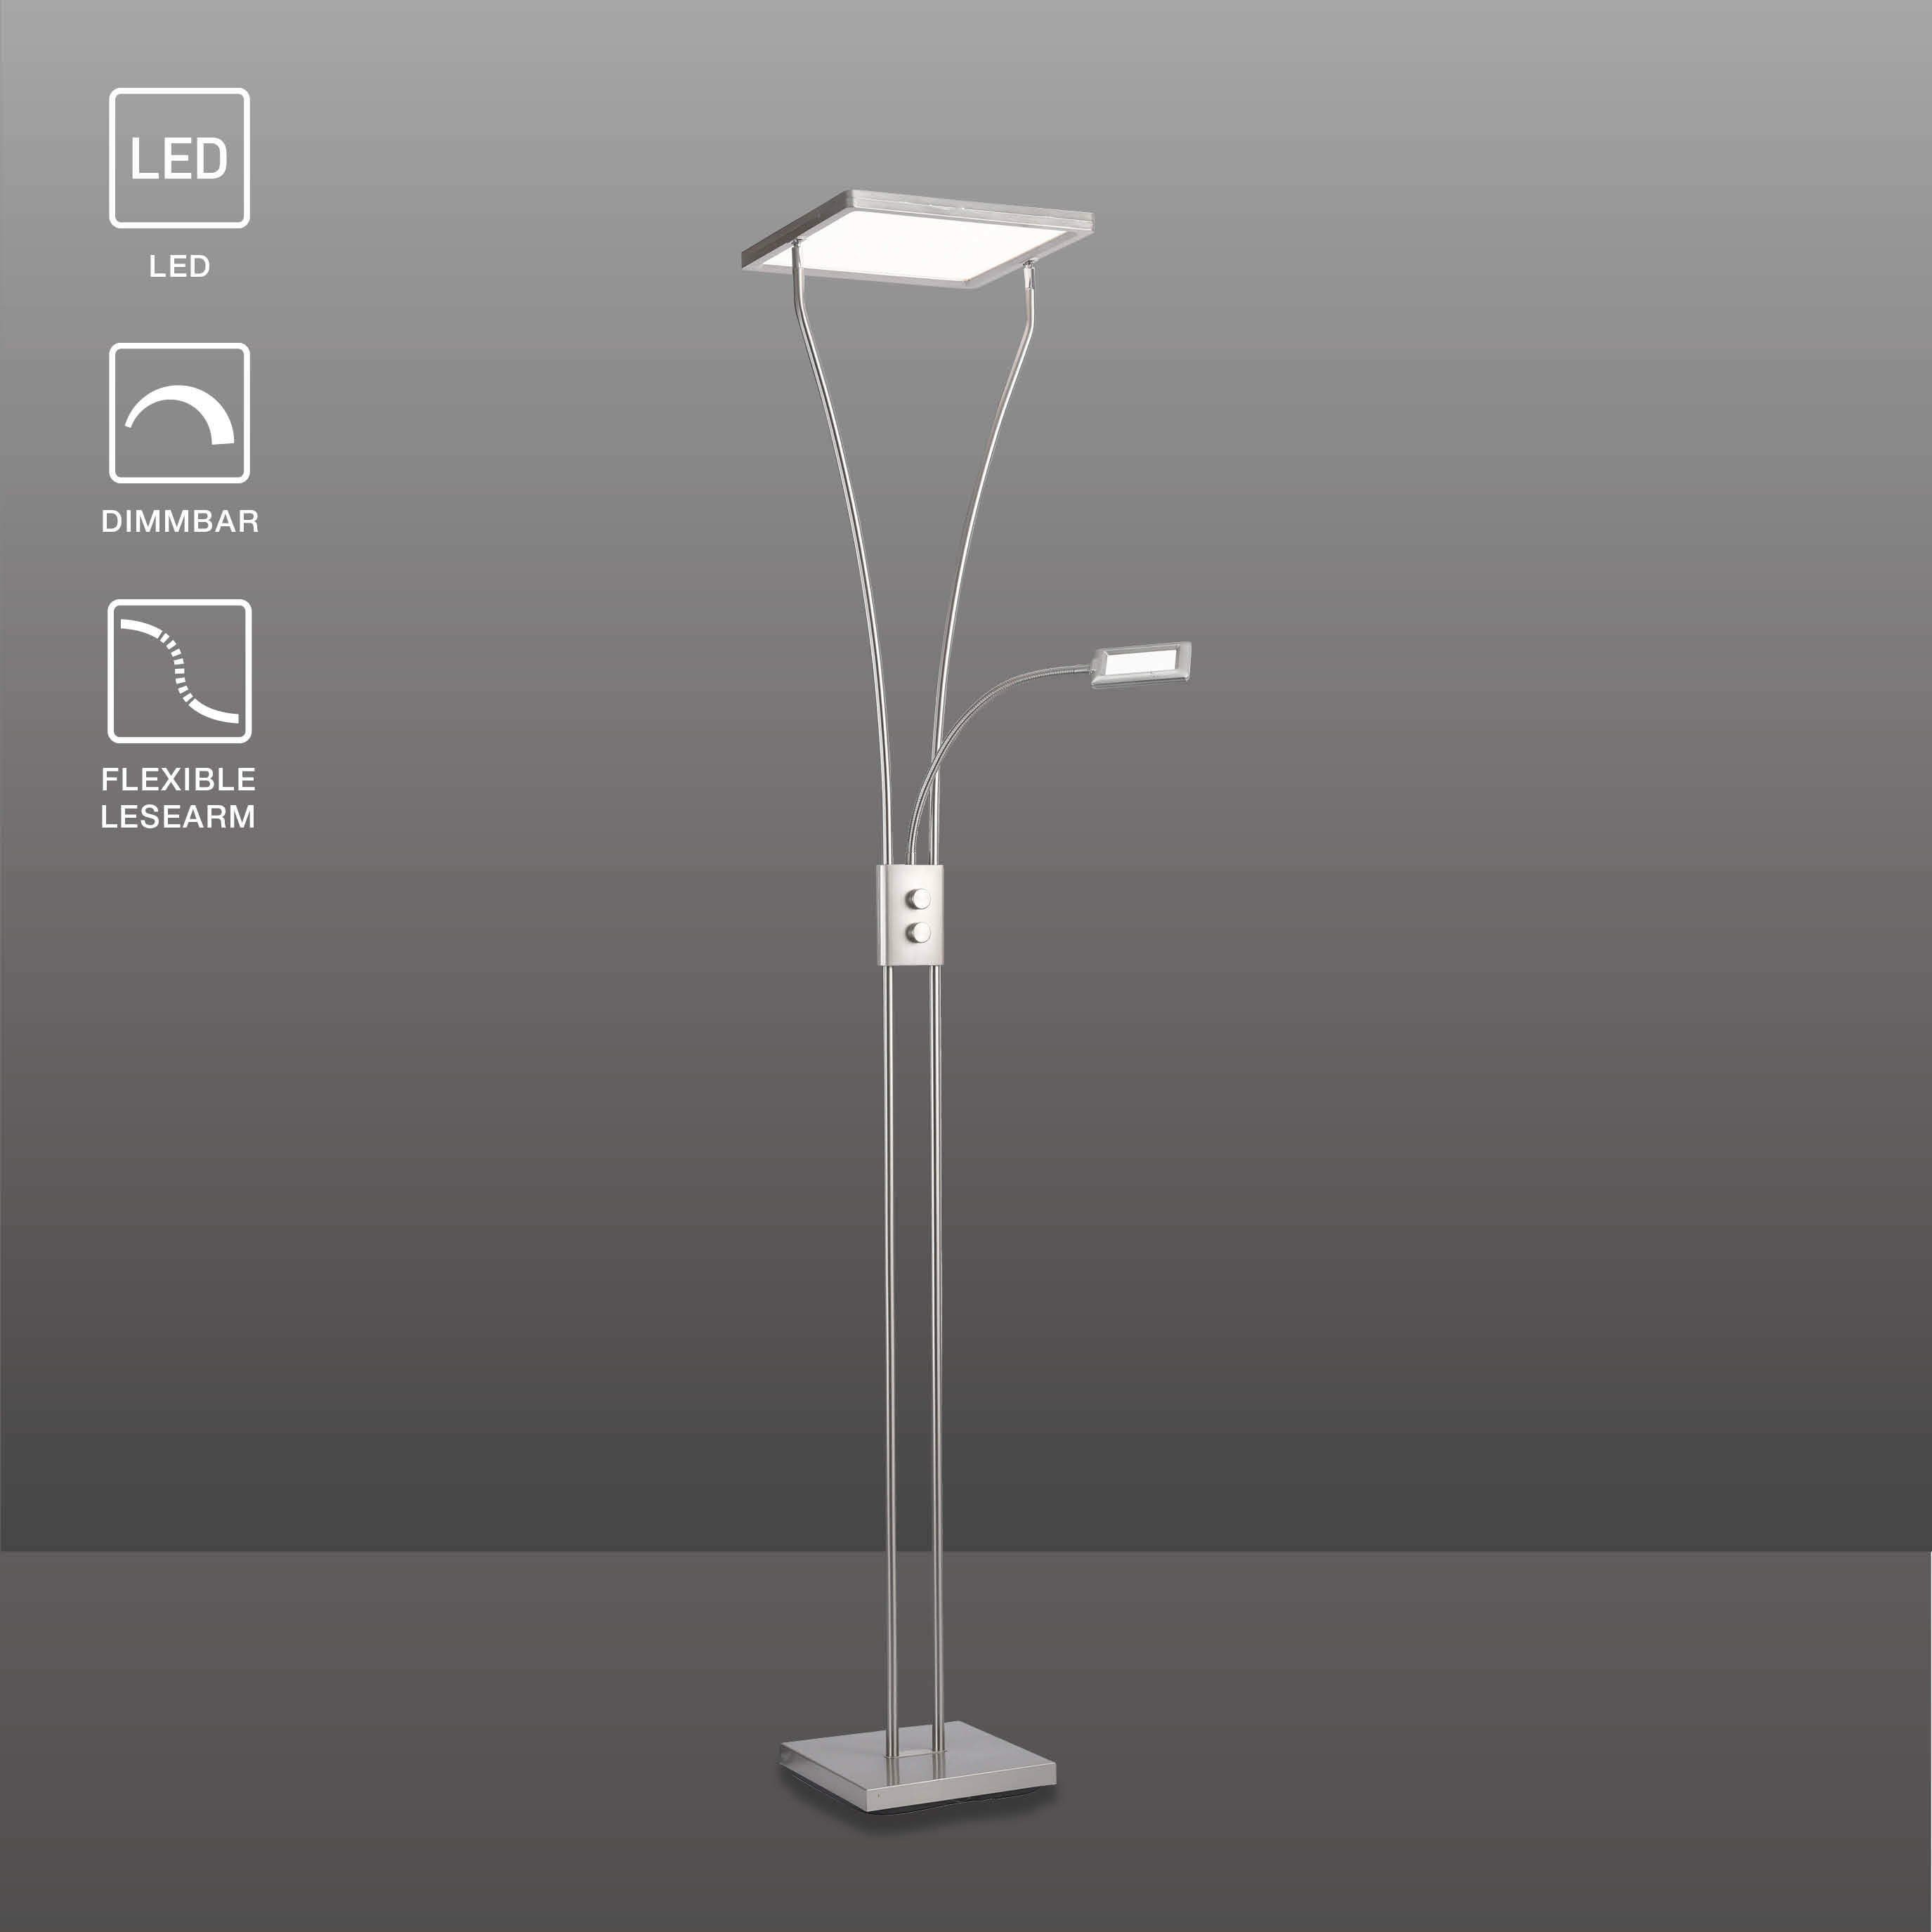 SellTec Stehlampe MARIAN, dimmbar über Drehdimmer, 1xLED-Board / 24.40  Watt, warmweiß, kippbarer Fluterkopf, dimmbar, flexible Leselampe